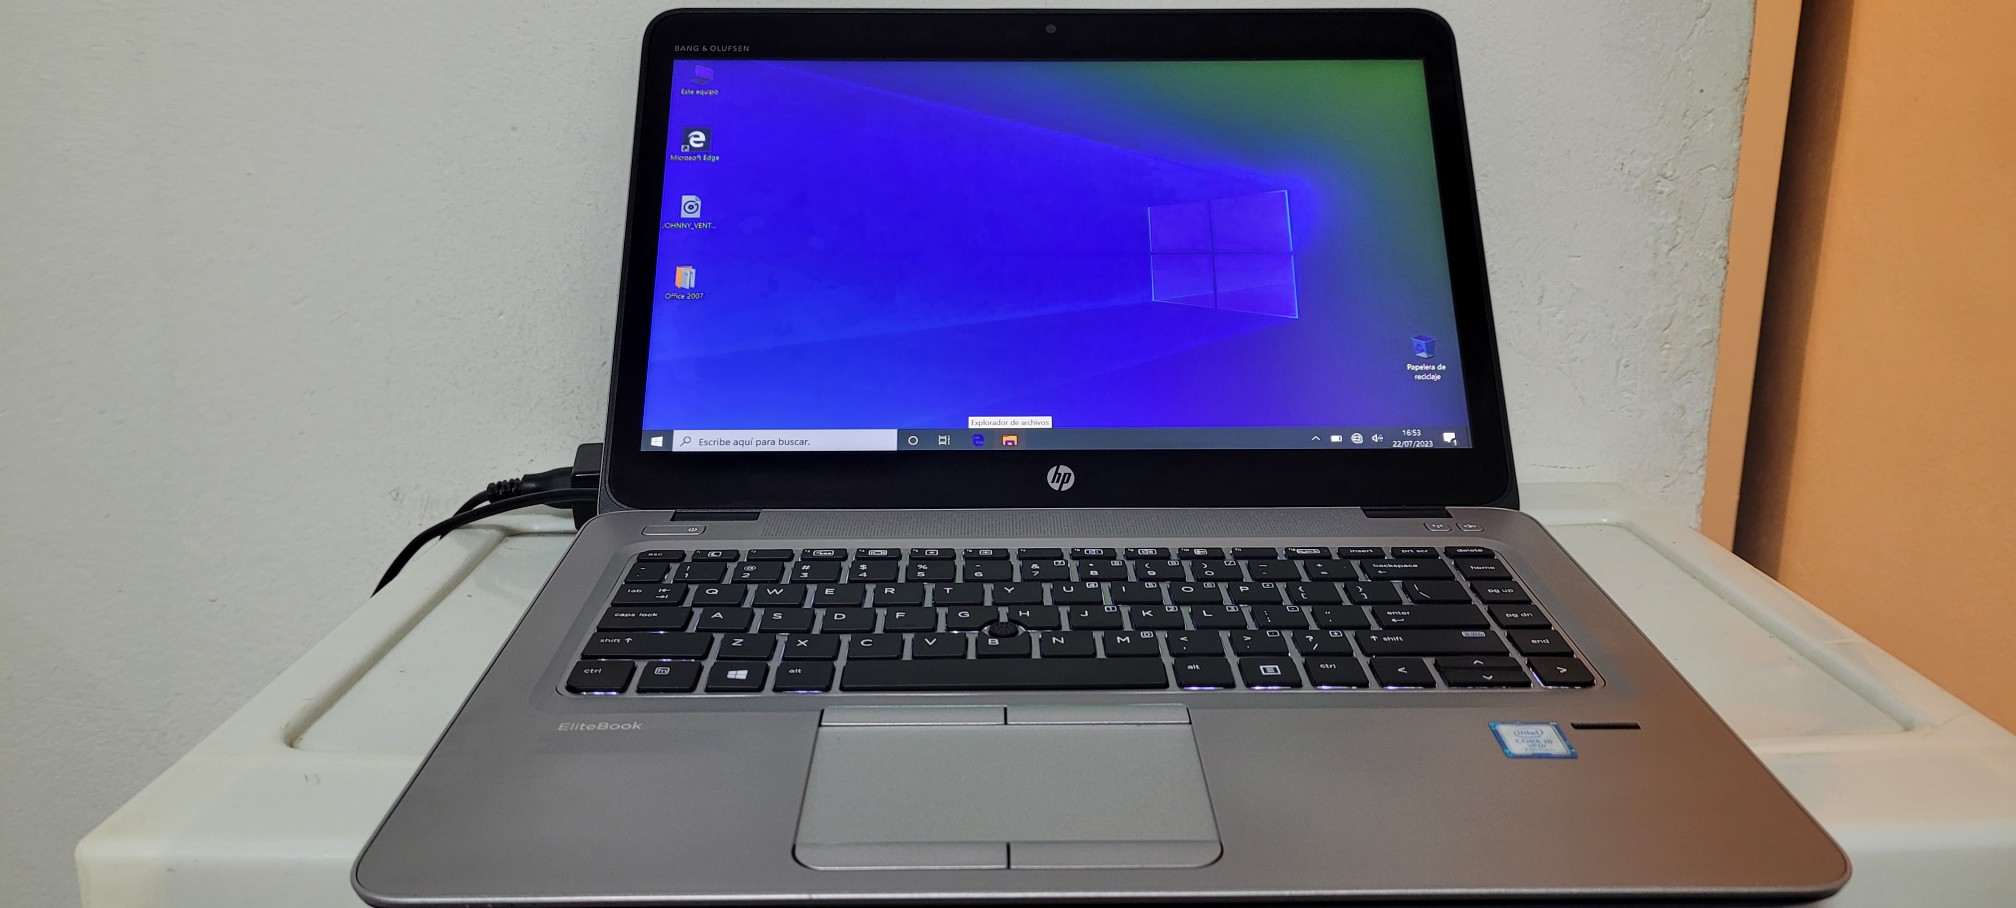 computadoras y laptops - Laptop hp Touch 14 Pulg Core i5 7ma Gen Ram 8gb ddr4 Disco 500gb bluetoth 0